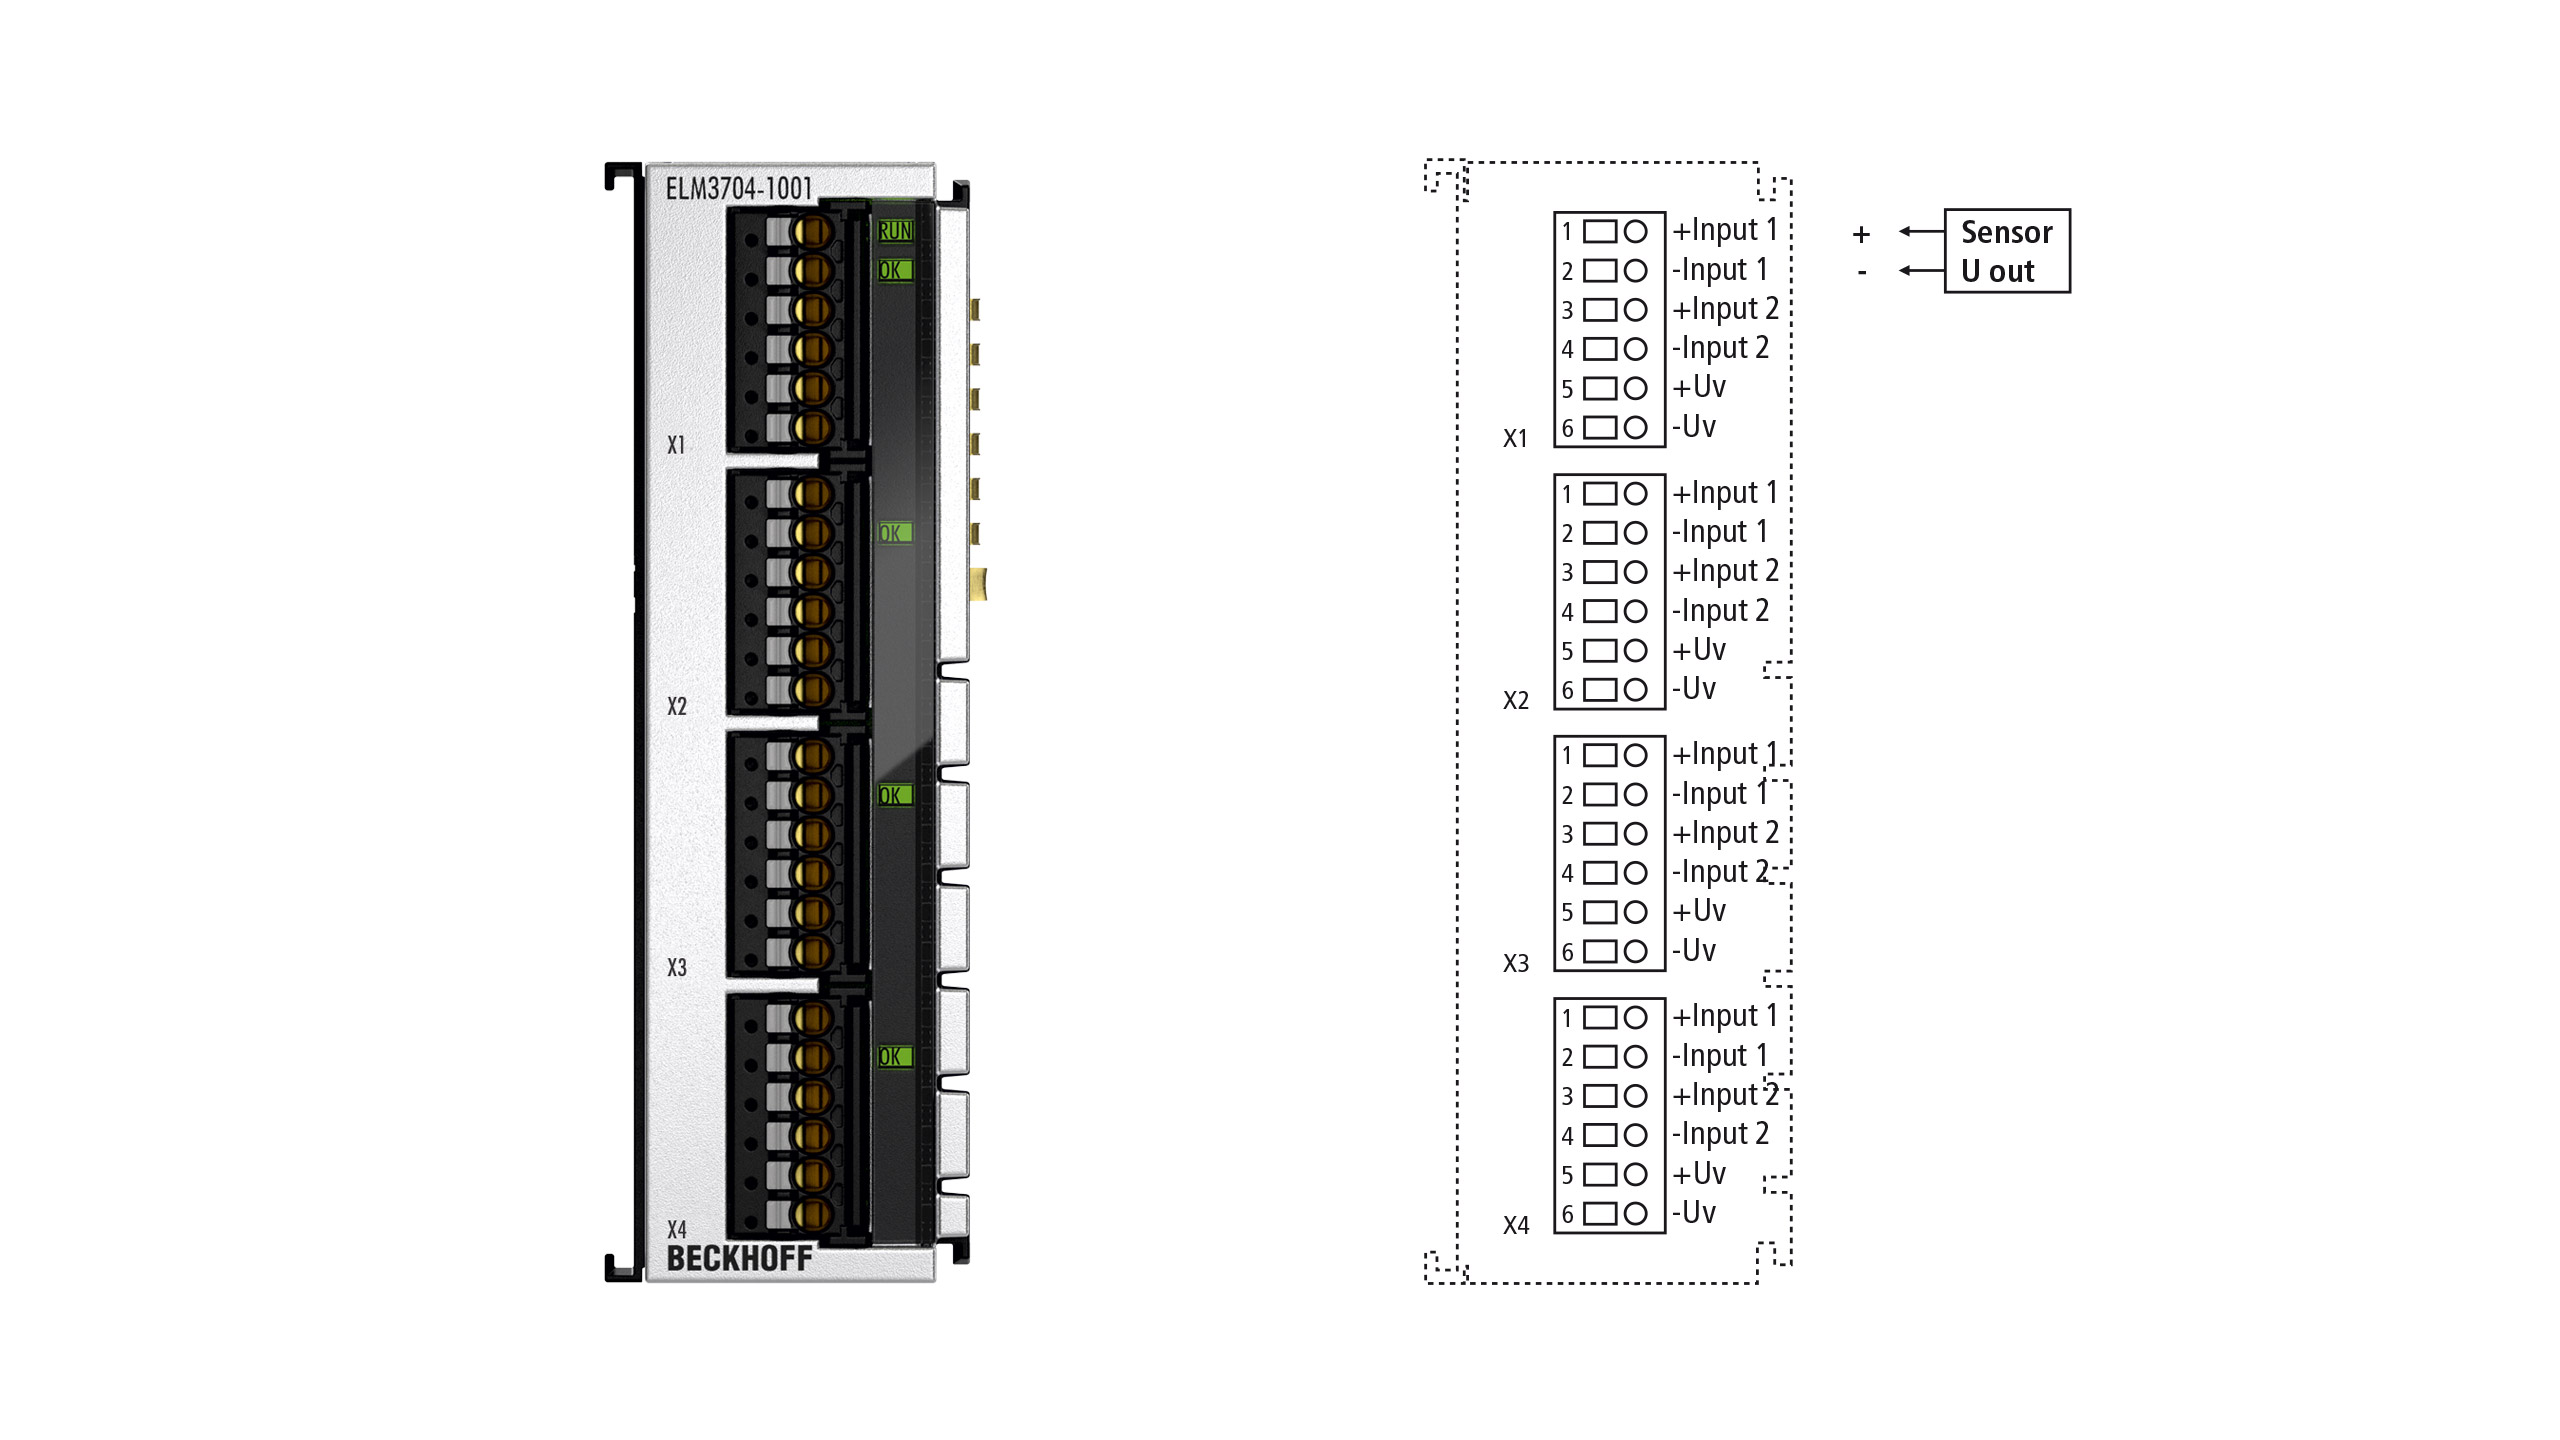 ELM3704-1001 | EtherCAT Terminal, 4-channel analog input, multi-function, 24 bit, 10 ksps, TC compensation